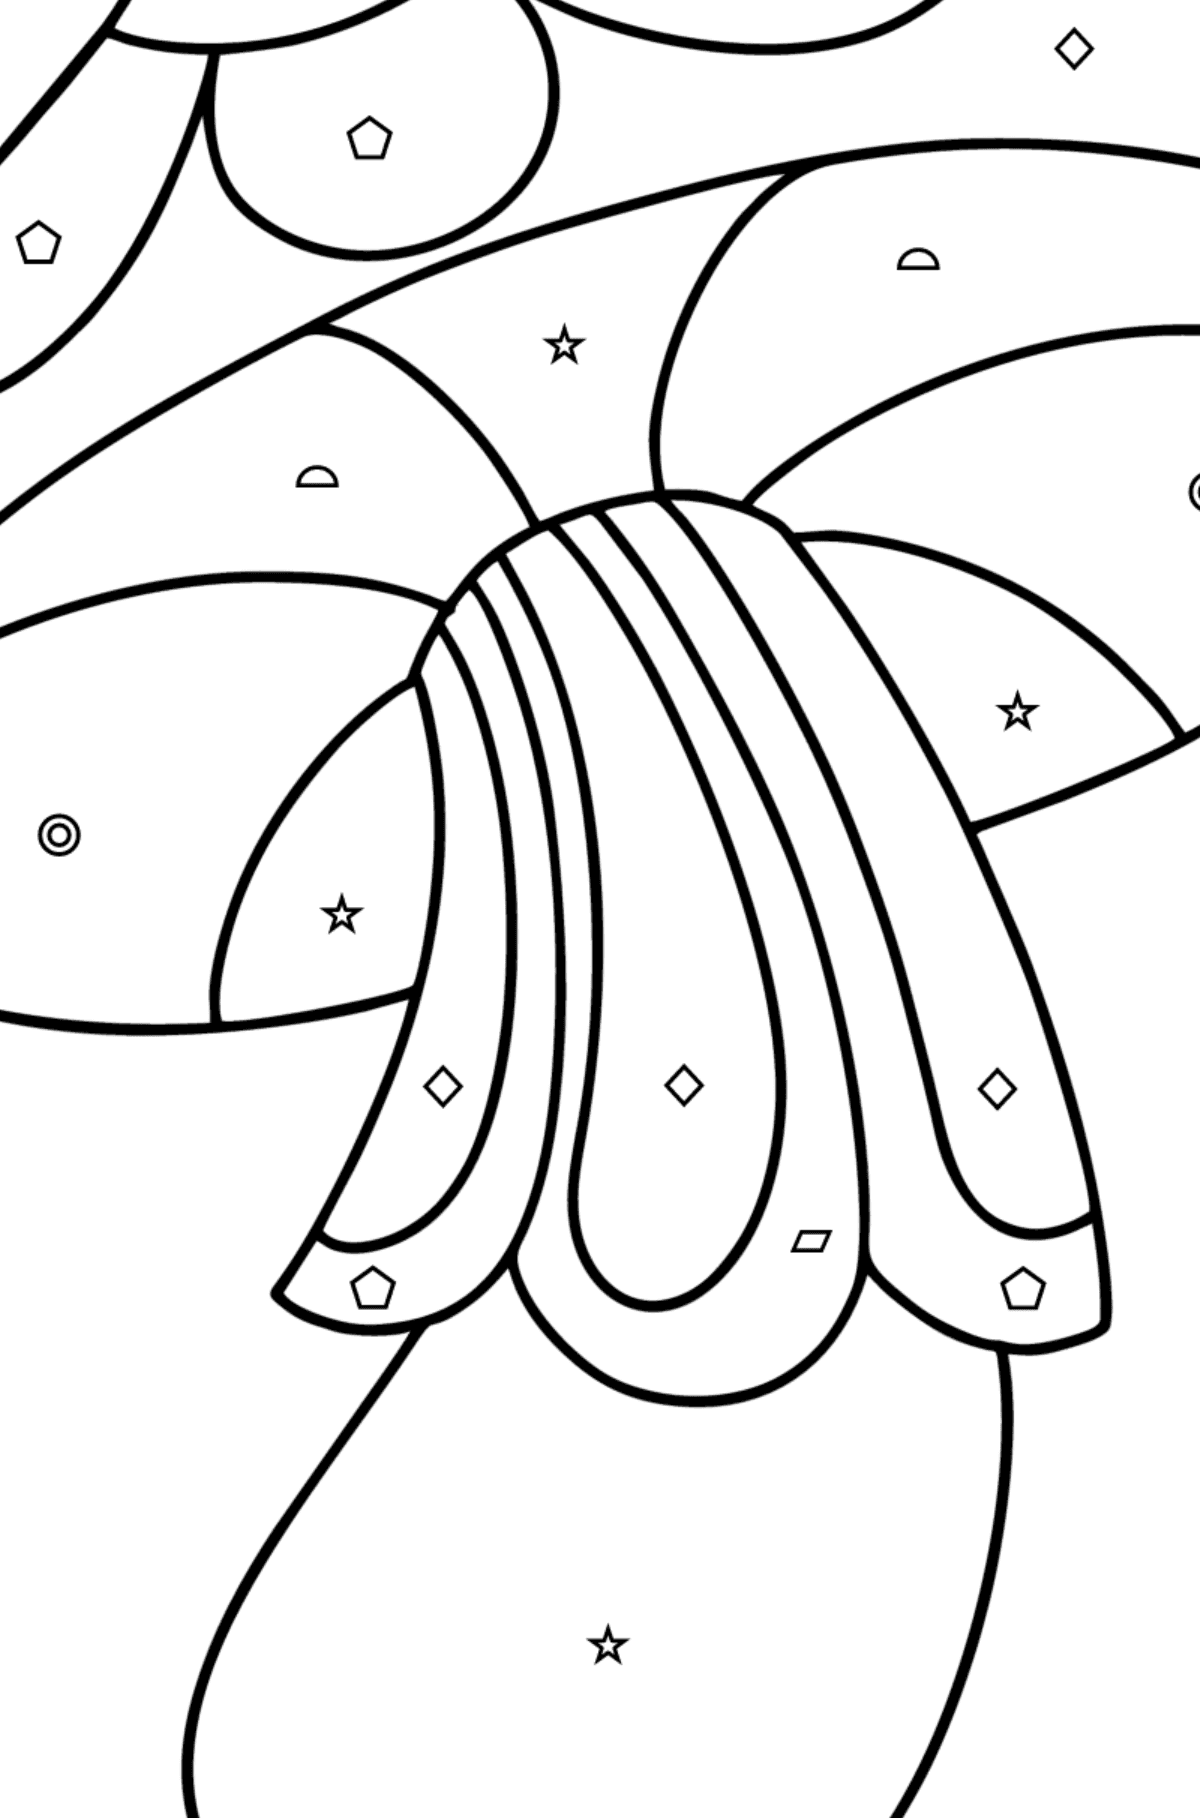 Розмальовка з грибами дзентангл - Розмальовки за геометричними фігурами для дітей